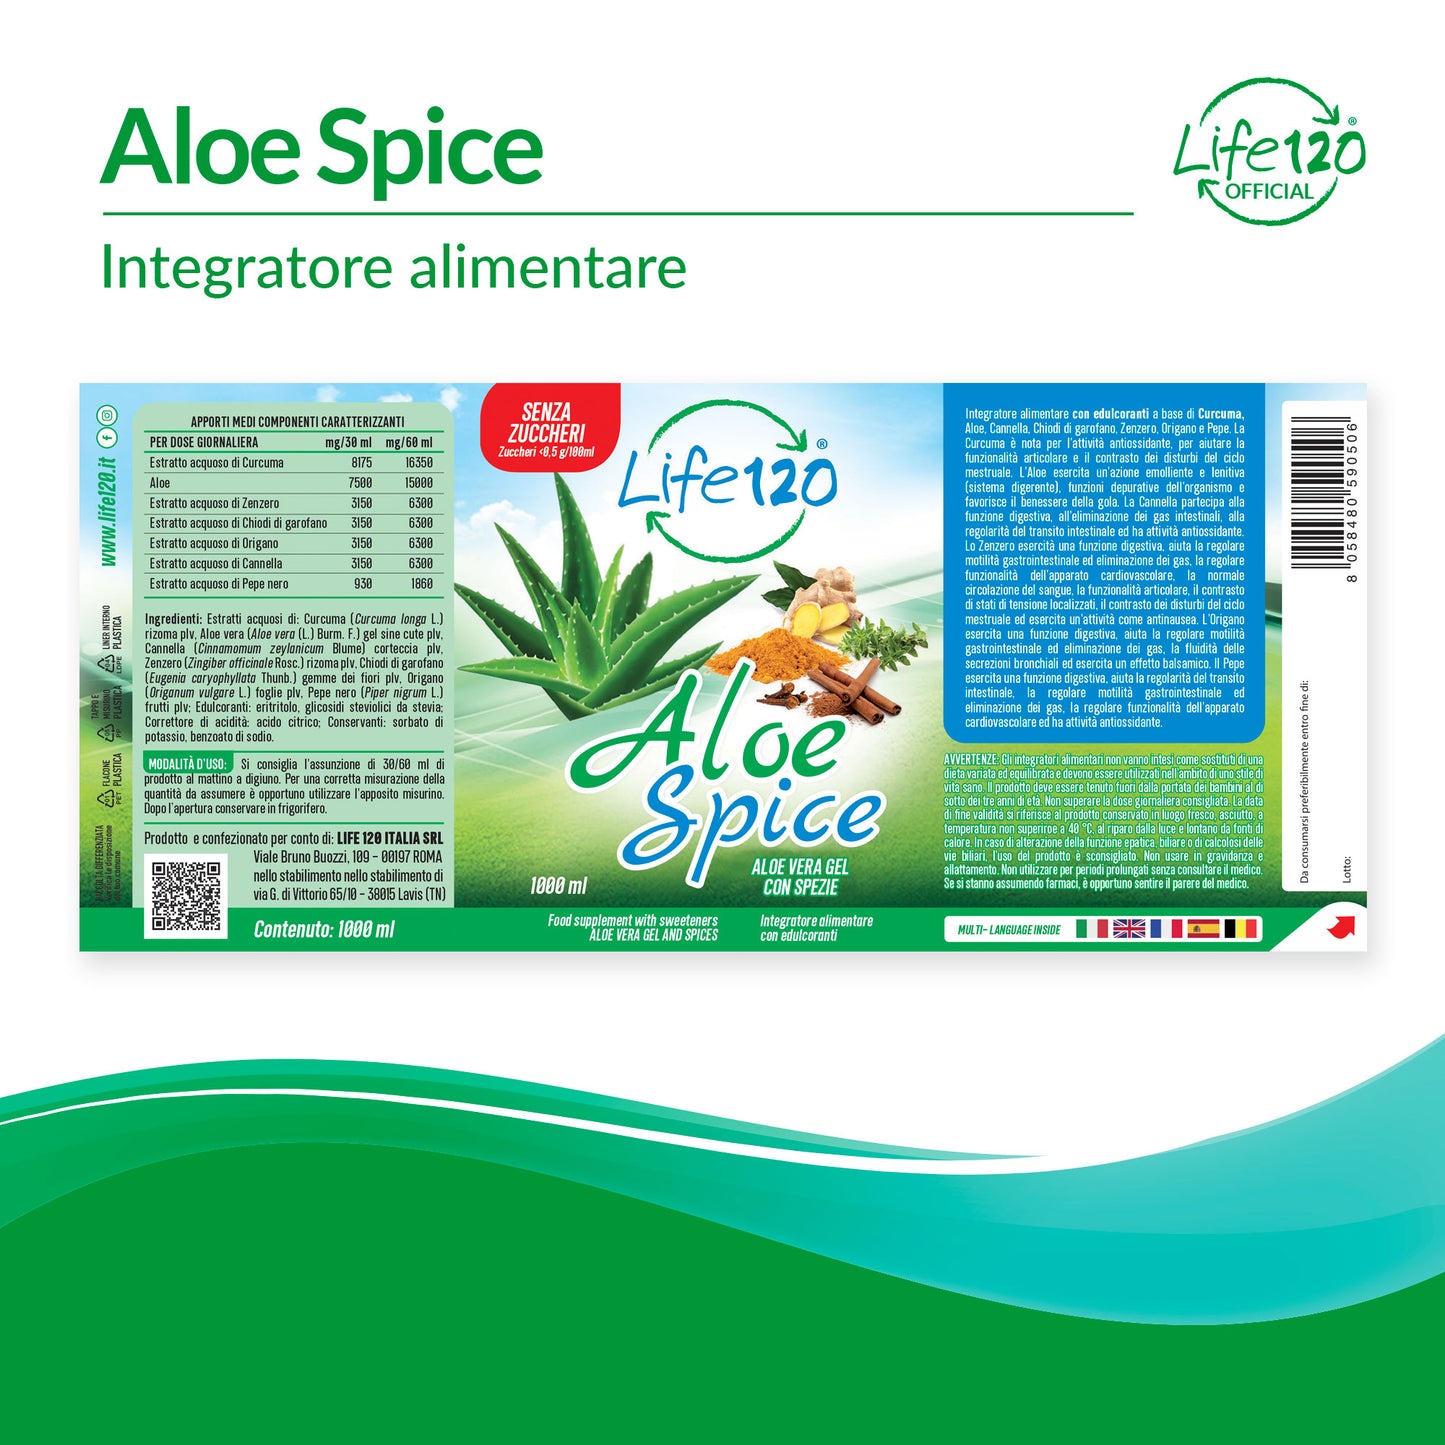 Aloe Spice